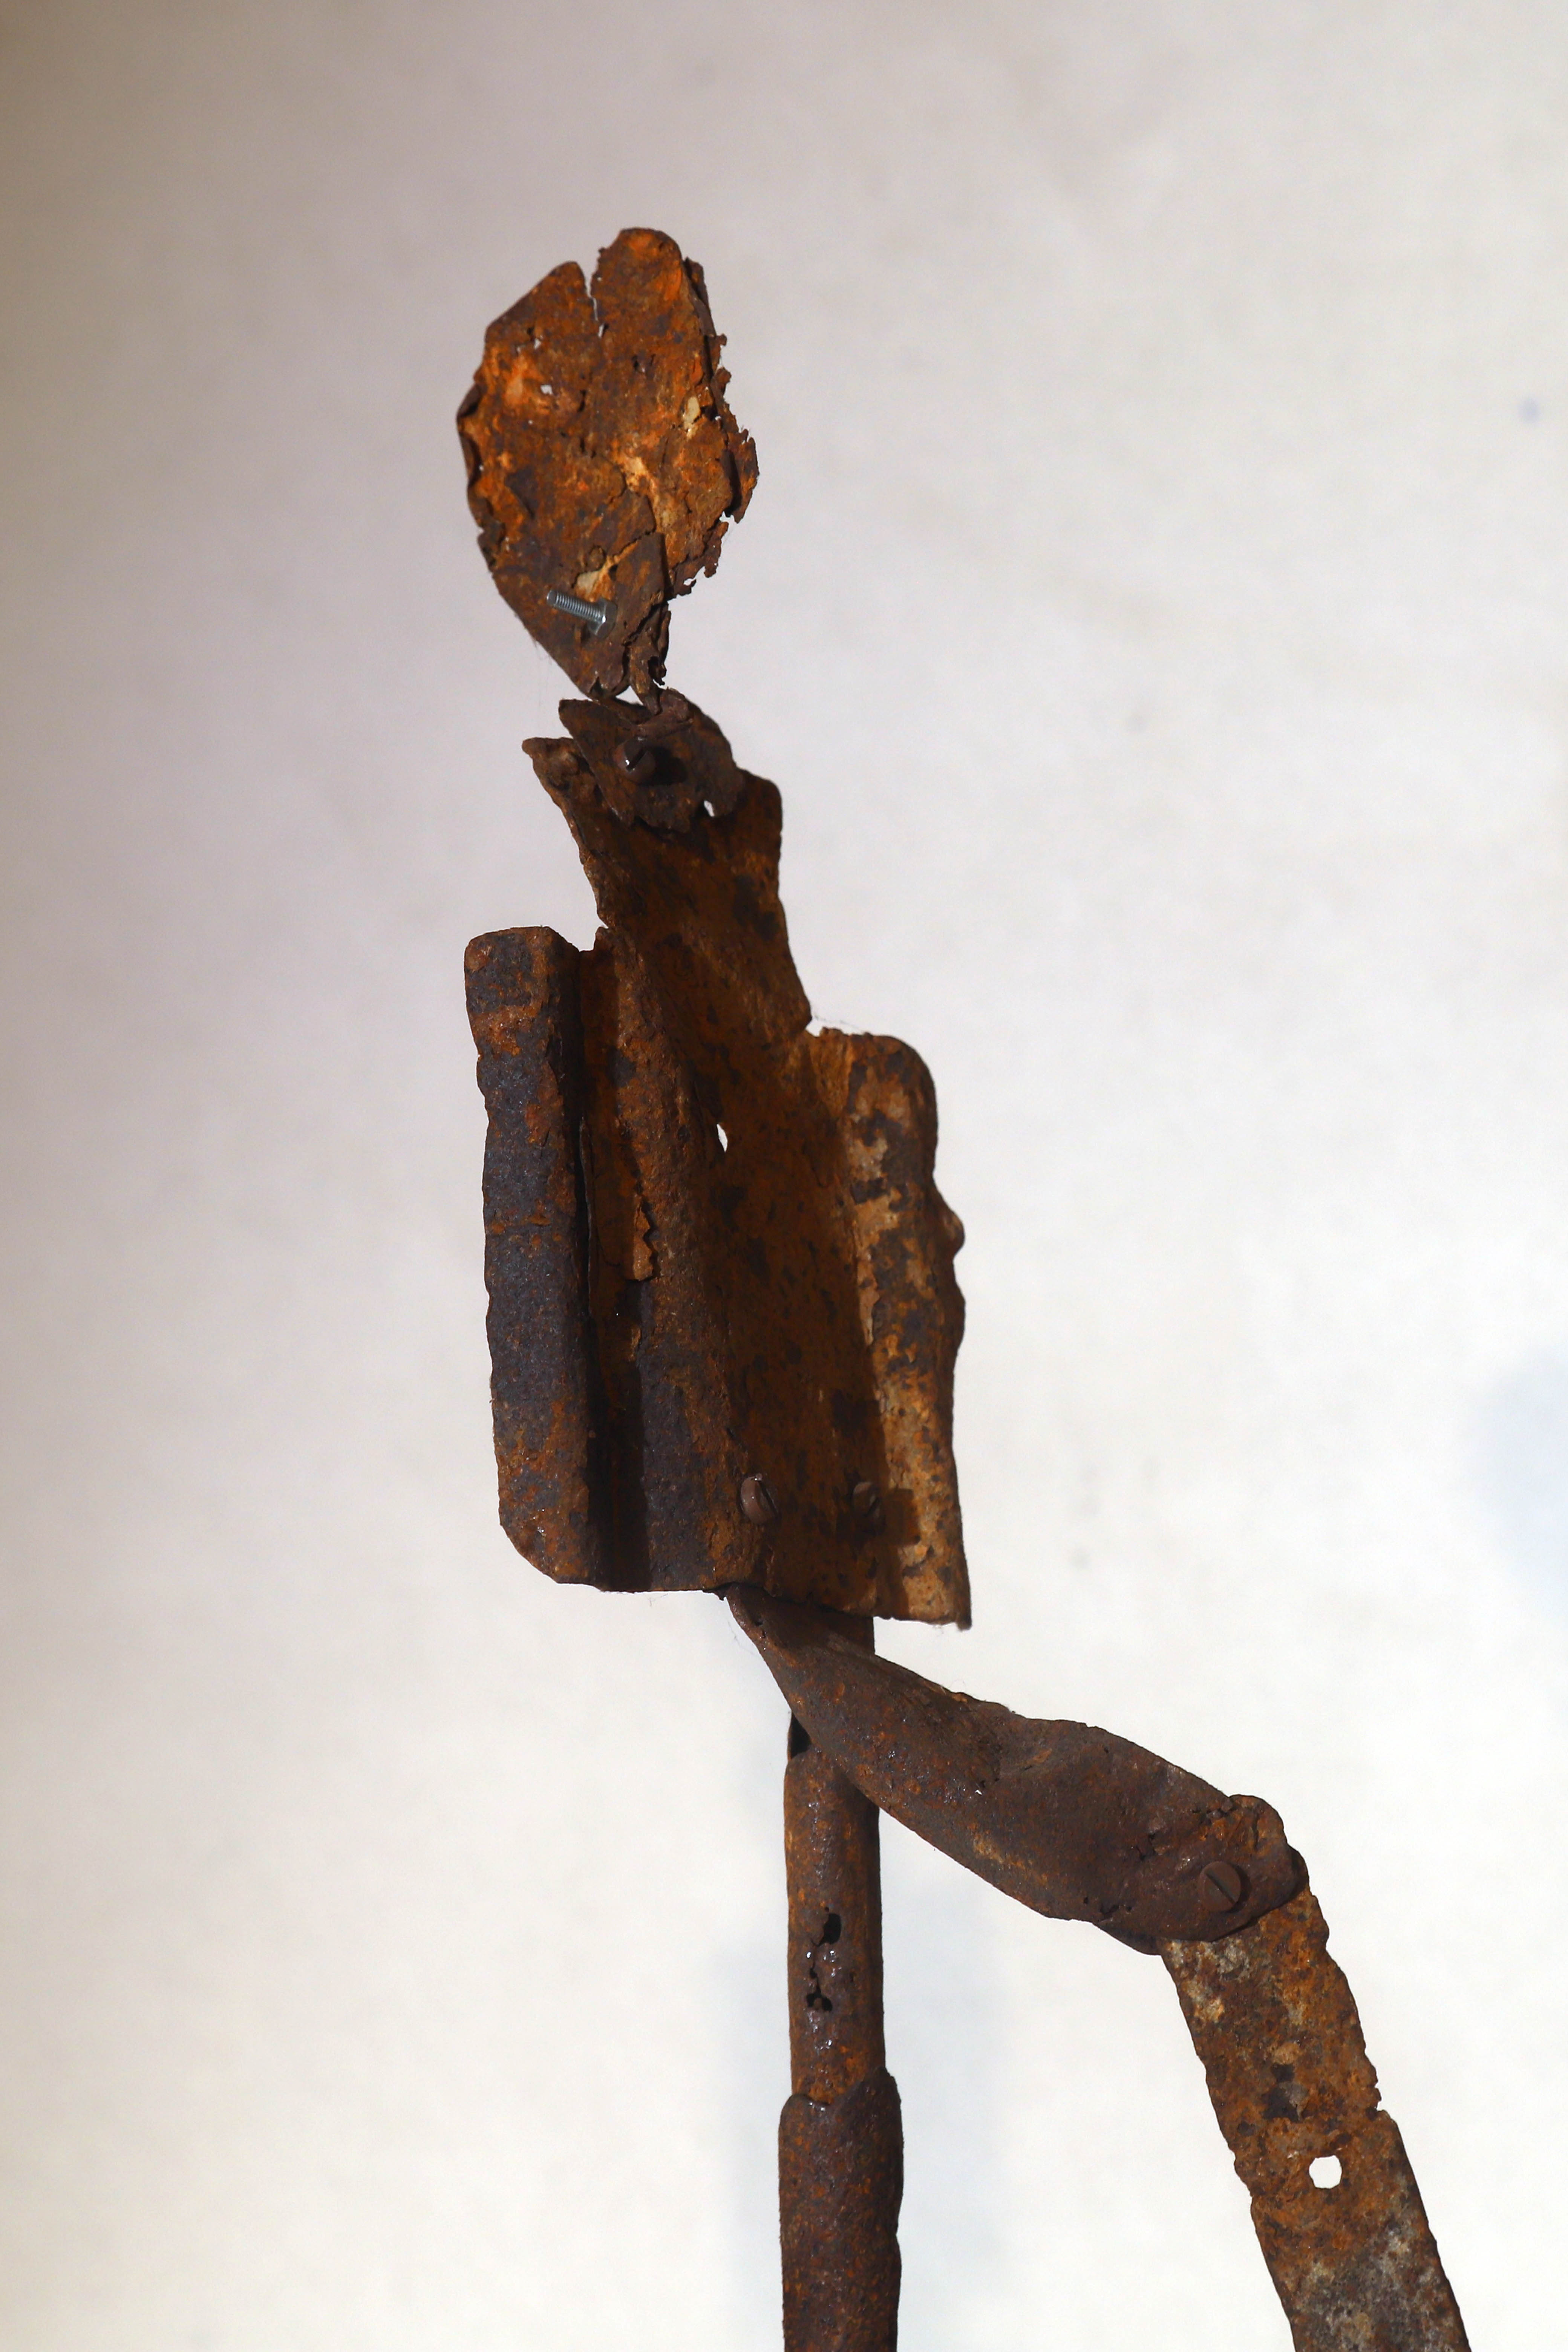 Antonio Panzuto - sculture Ruggini - Figura danzante 4 - Rusty sculpture Dancing figure